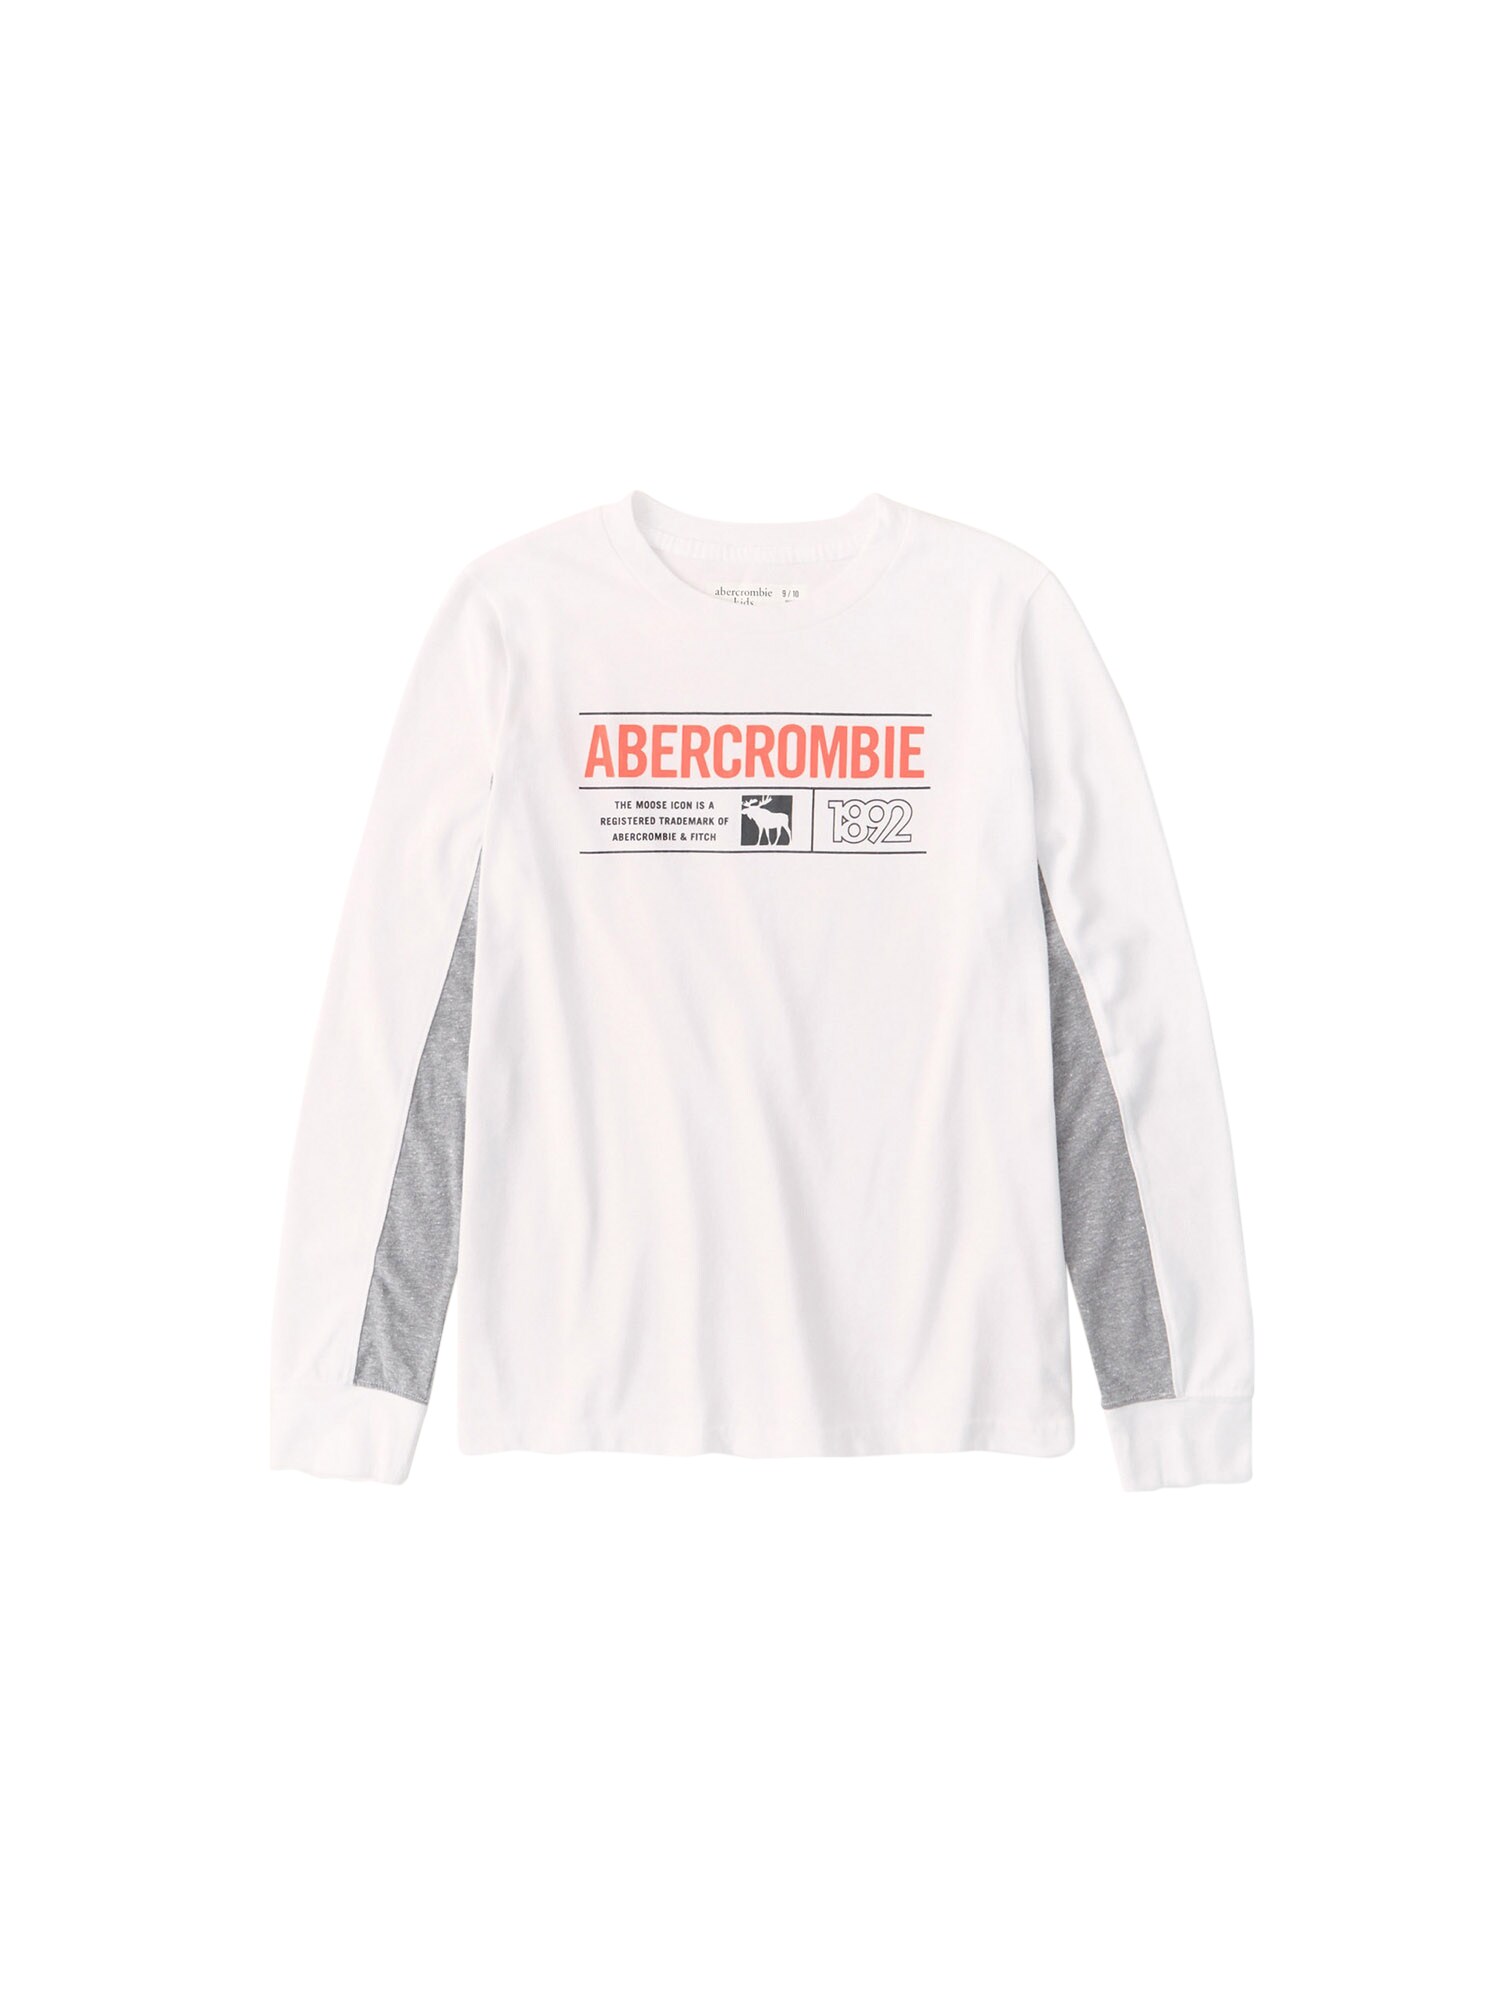 Abercrombie & Fitch Marškinėliai  balta / pilka / šviesiai raudona